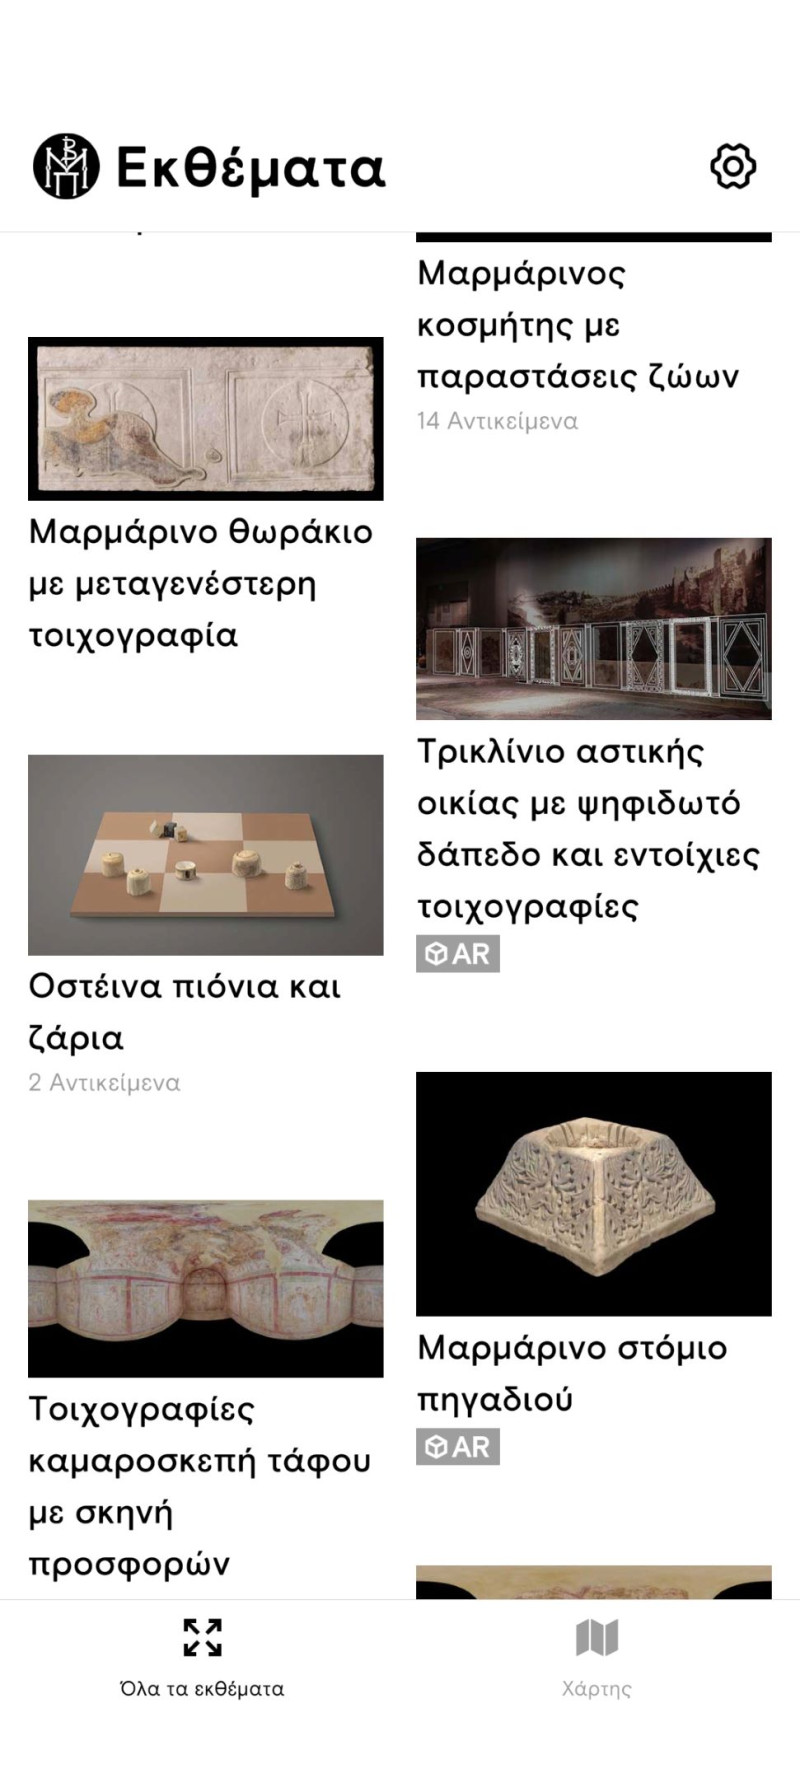 Τα εκθέματα του Μουσείου Βυζαντινού Πολιτισμού